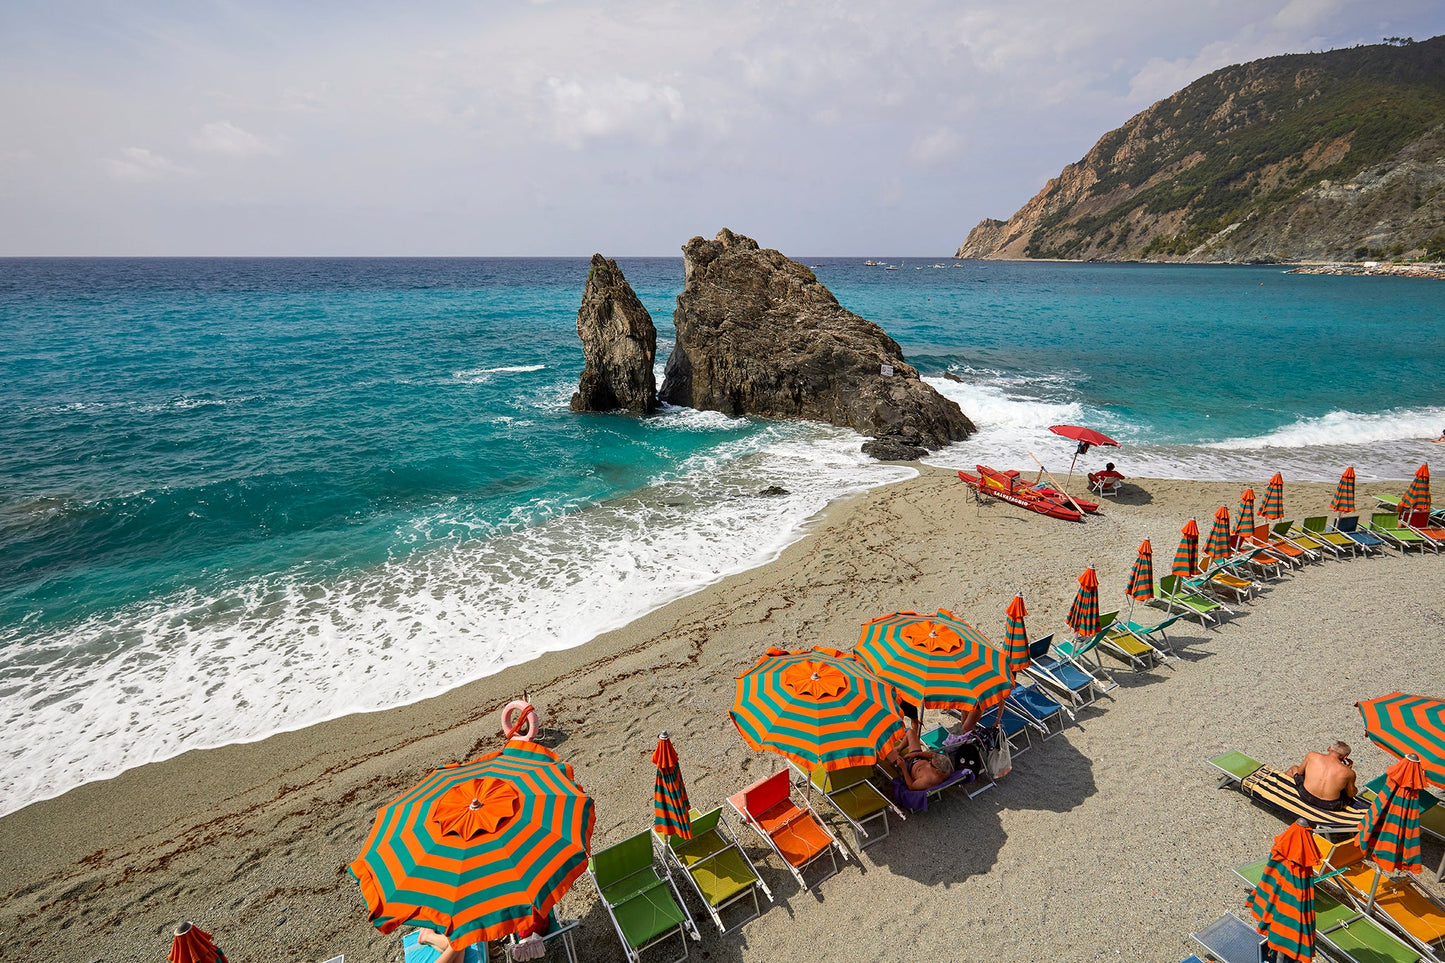 Beach umbrellas 3 - Monerosso, Cinque Terre, Italy